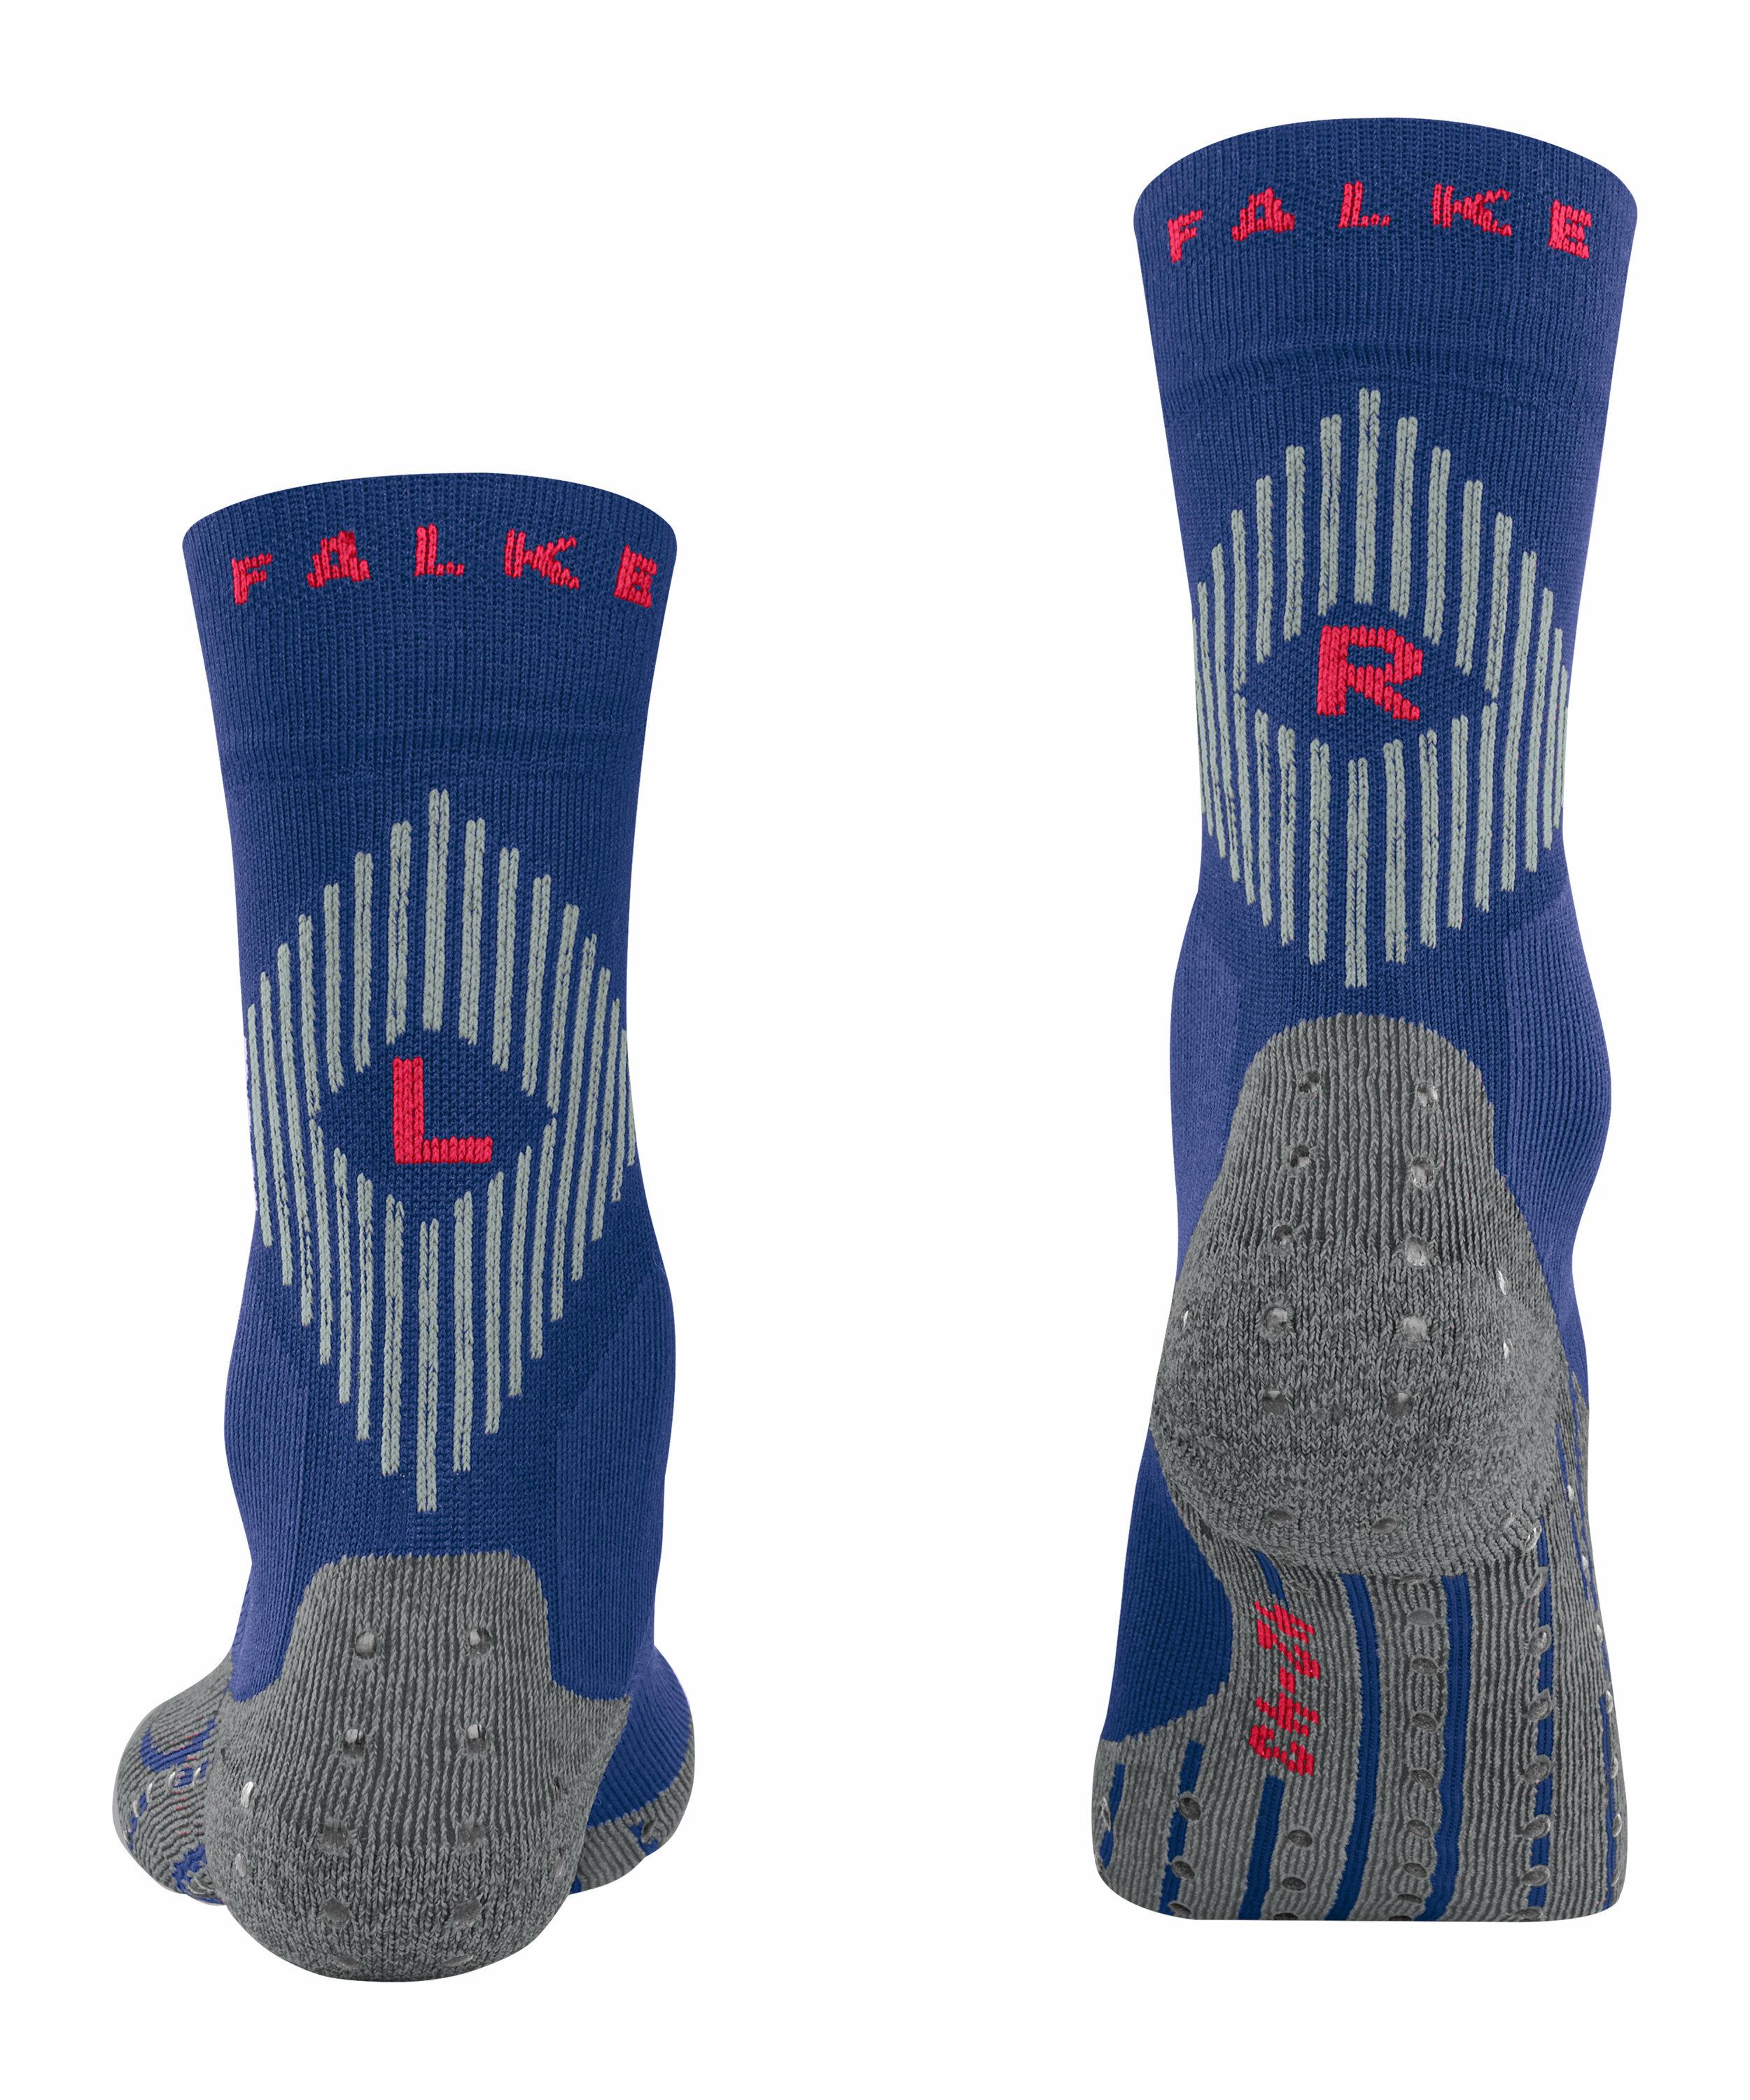 FALKE 4GRIP Socken, 35-36, Blau, 16086-644908 günstig online kaufen